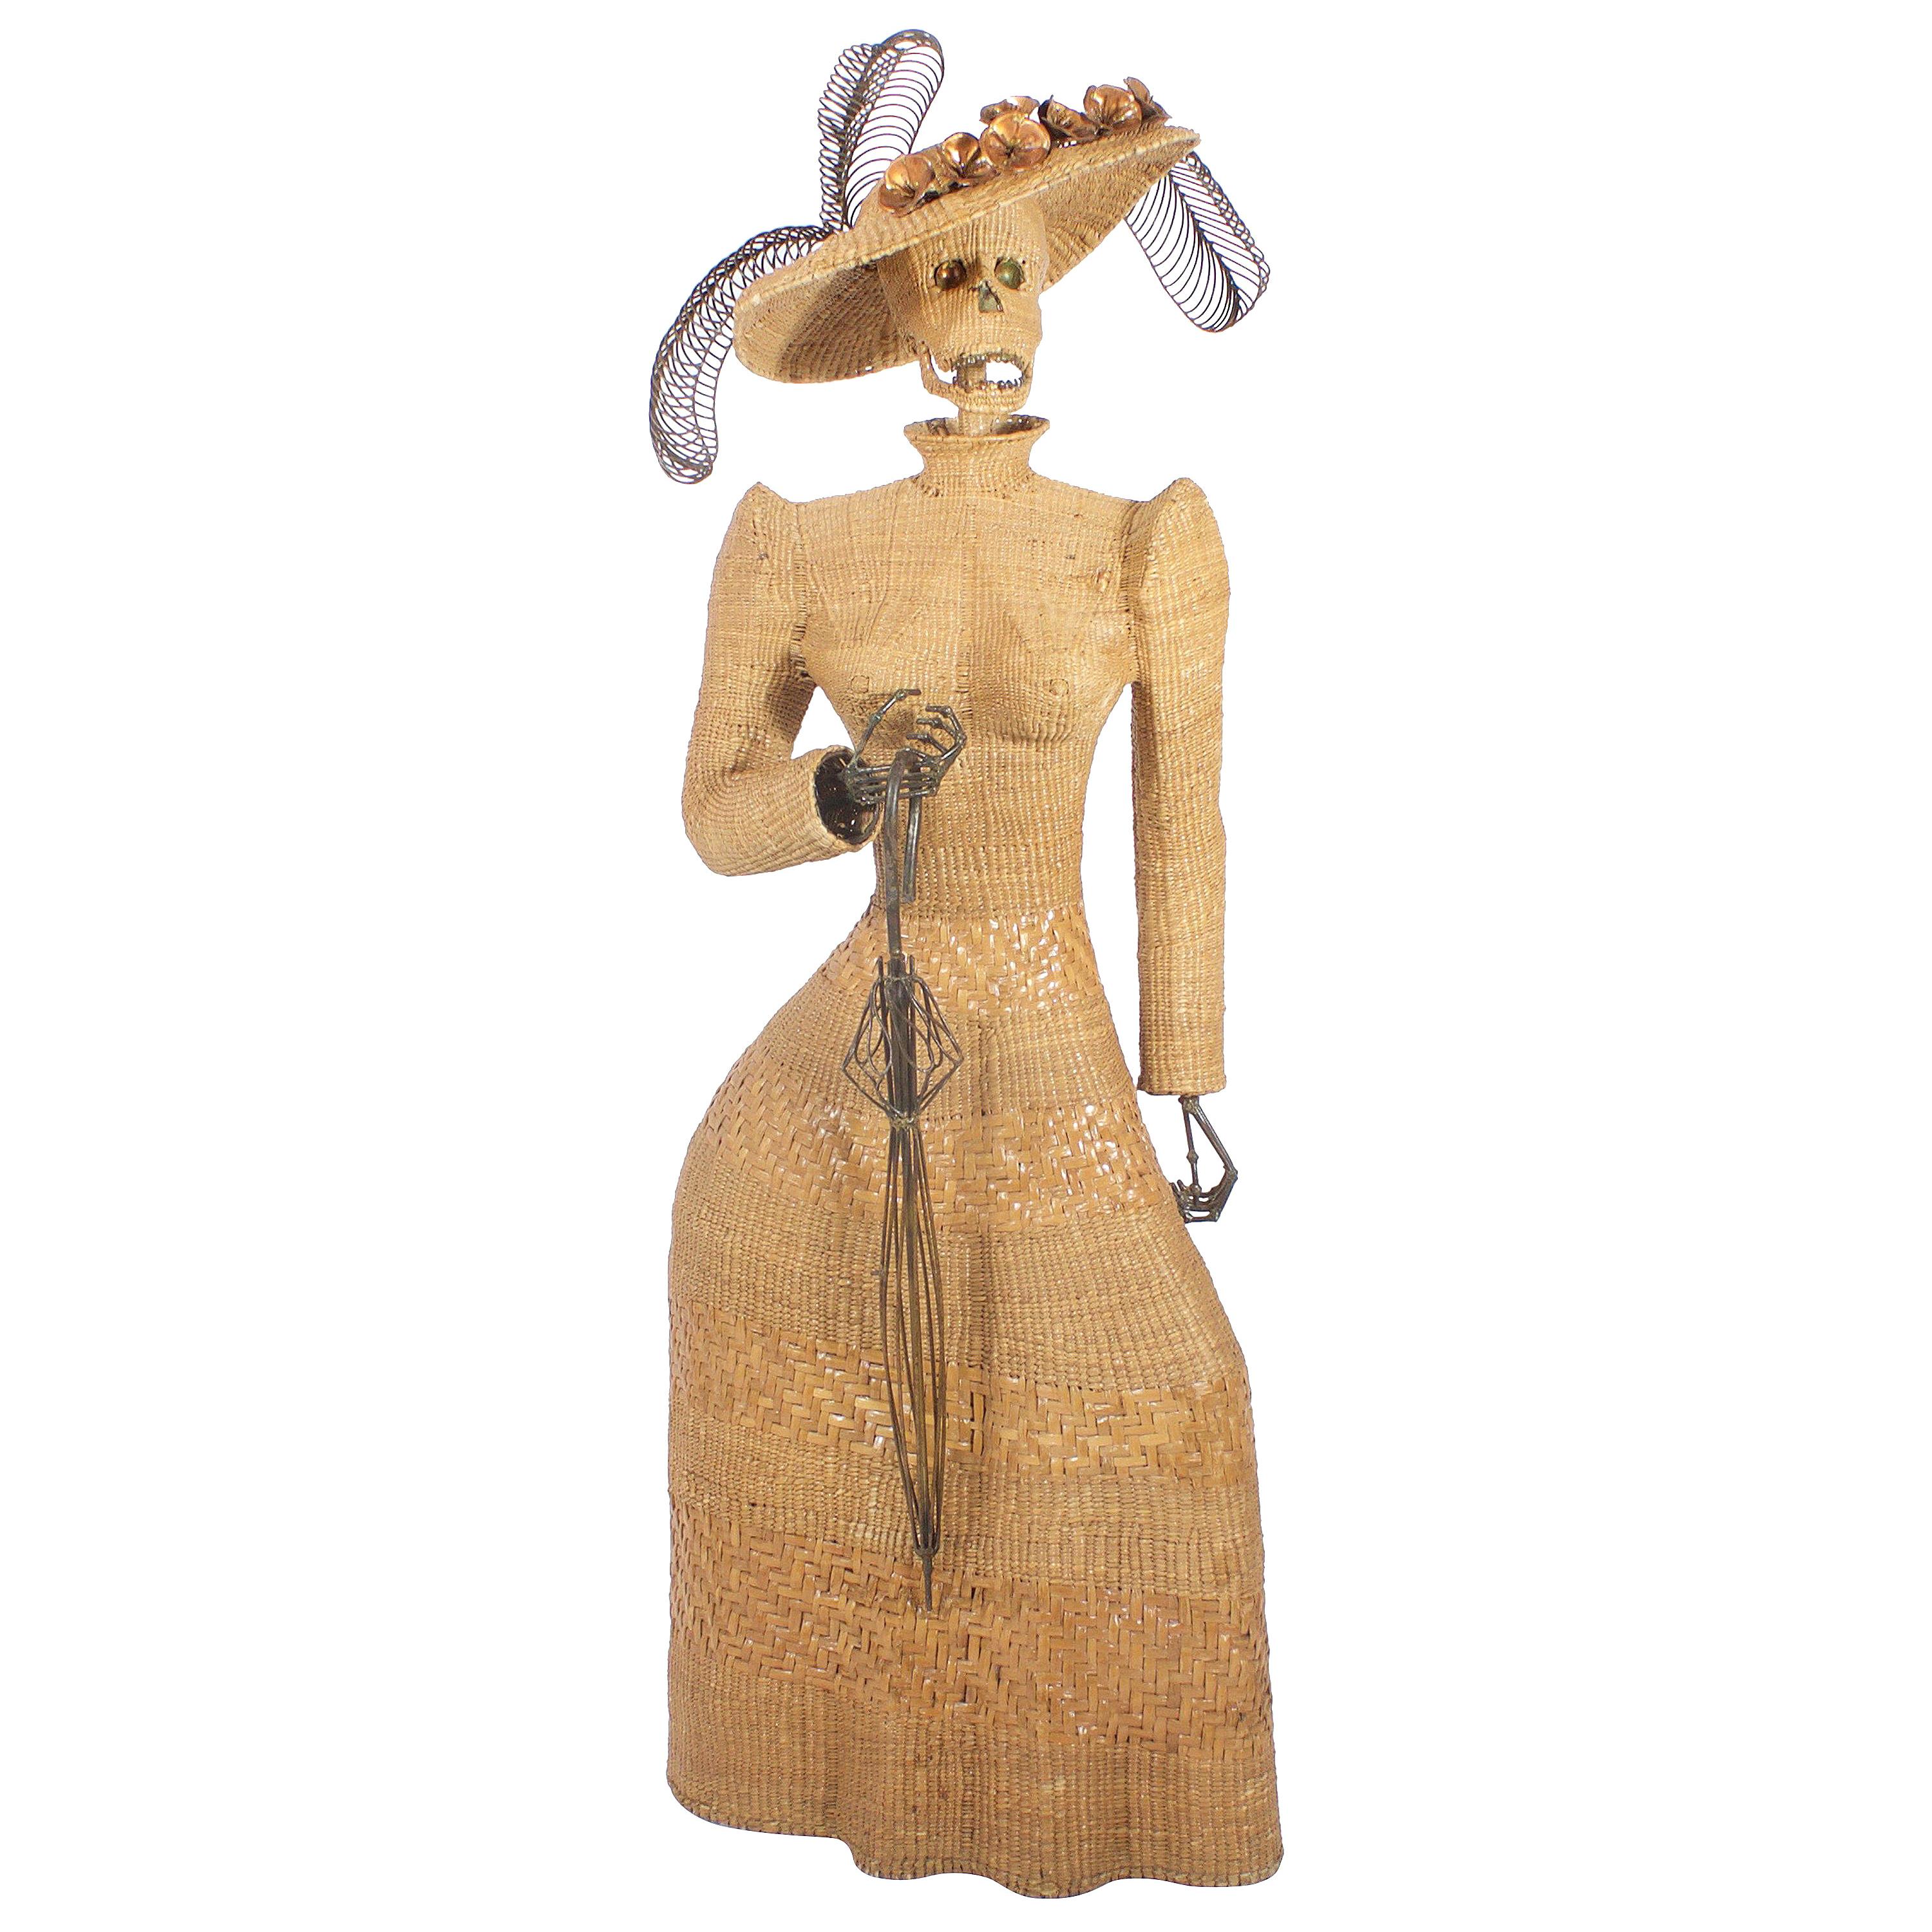 Sculpture en osier de Mario Torres représentant une femme en vente